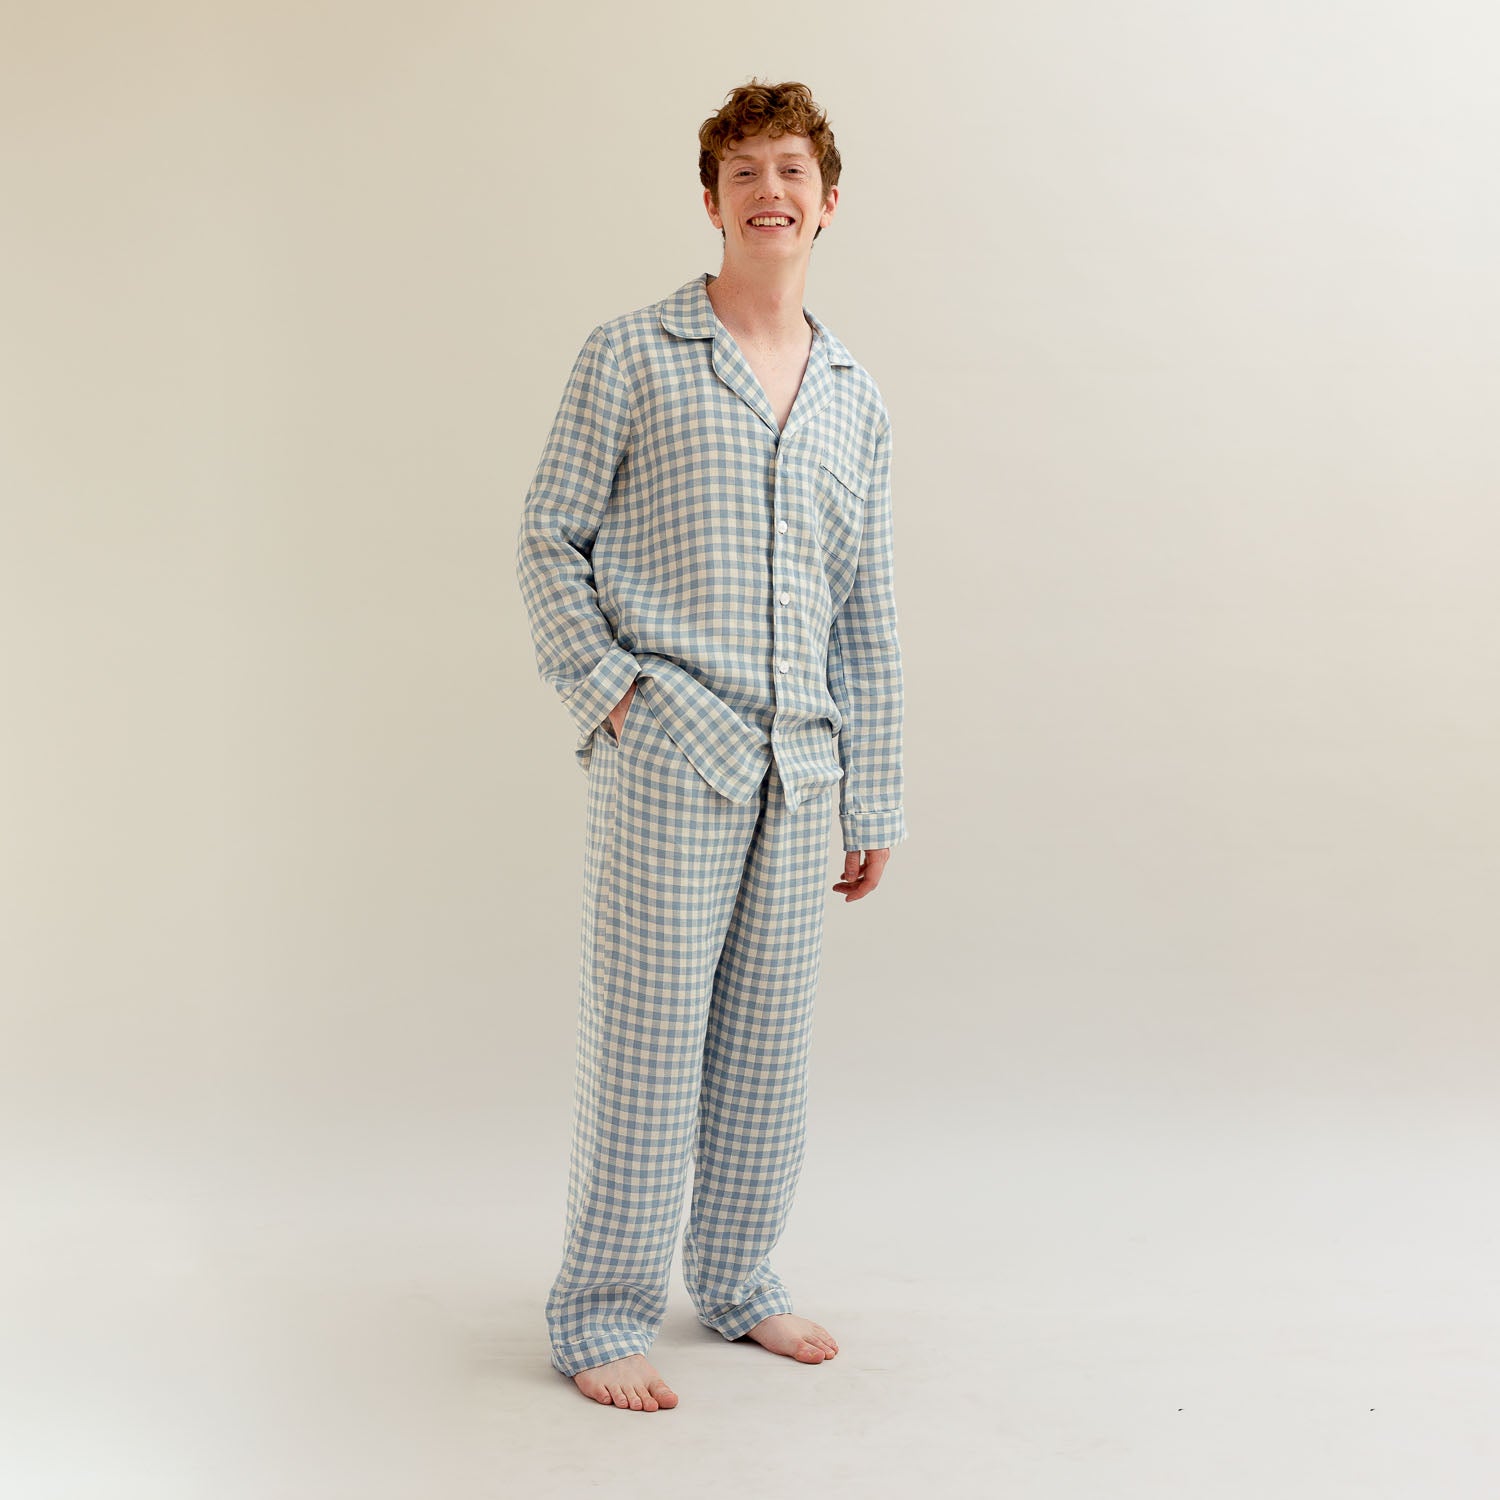 Men's Warm Blue Gingham Linen Pyjama Trouser Set - Piglet in Bed